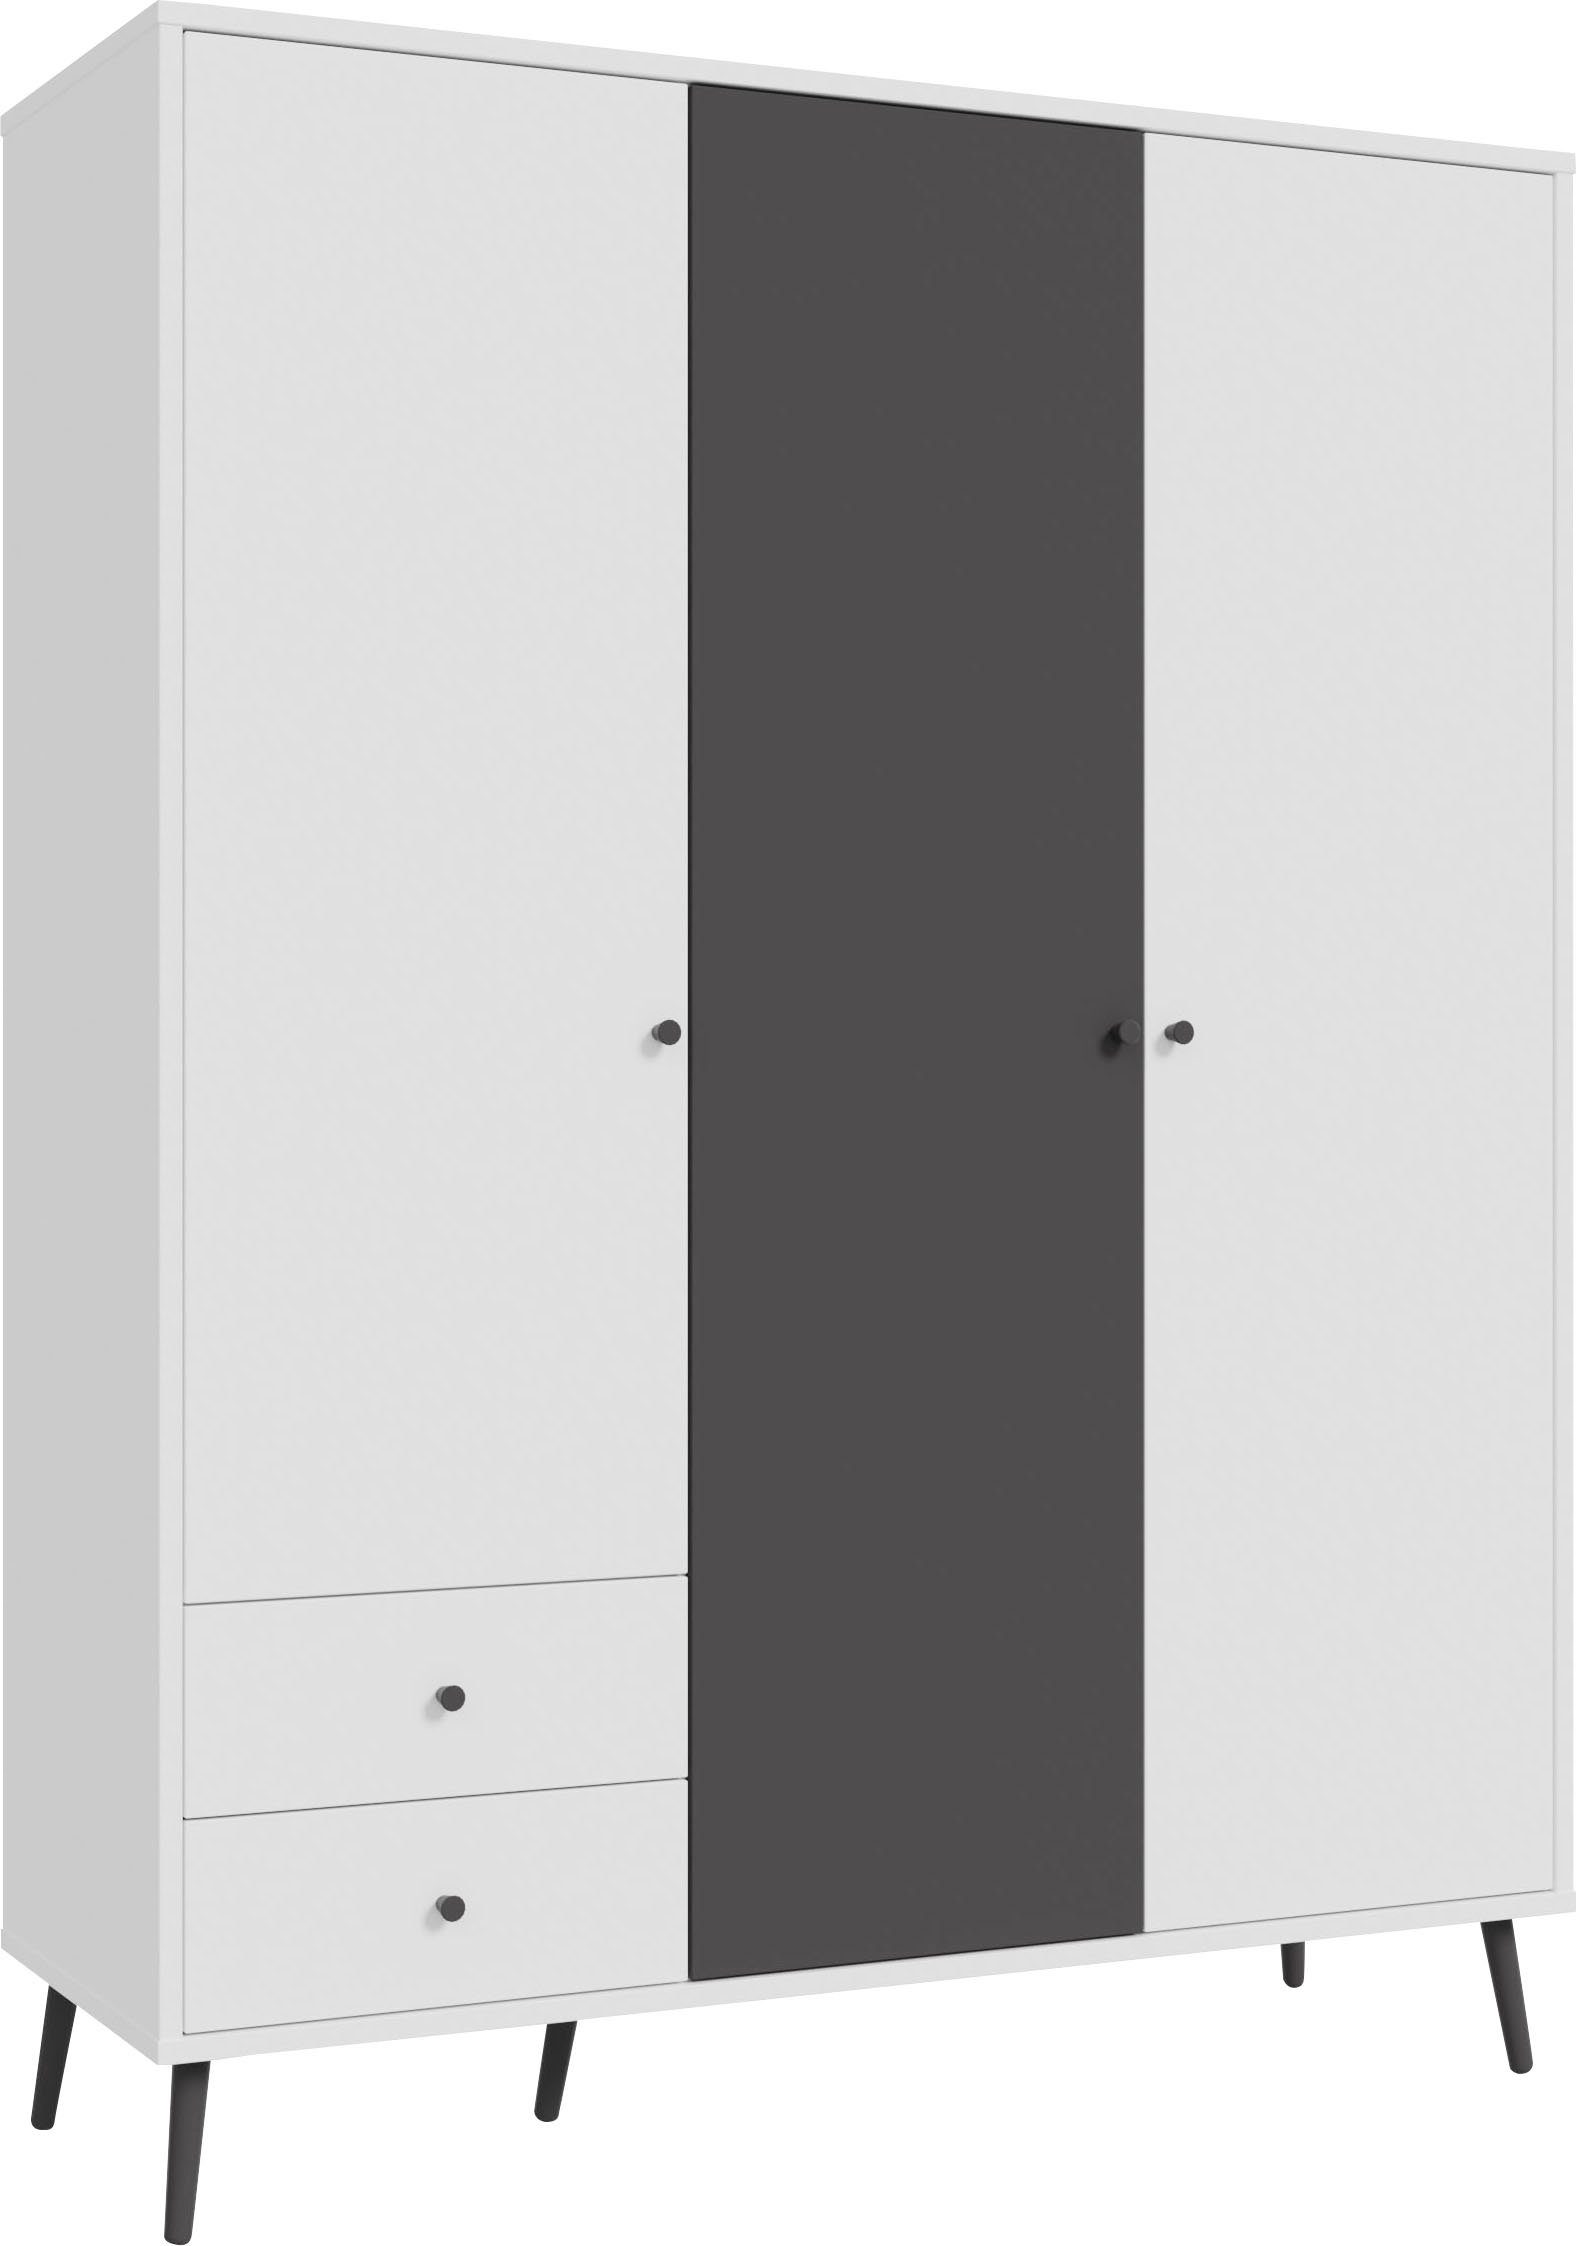 FORTE Drehtürenschrank Harllson EasyKlix by Forte, Montage von Korpus und Türen ohne Werkzeug oder Schrauben Weiß/Uni Wolfram Grau